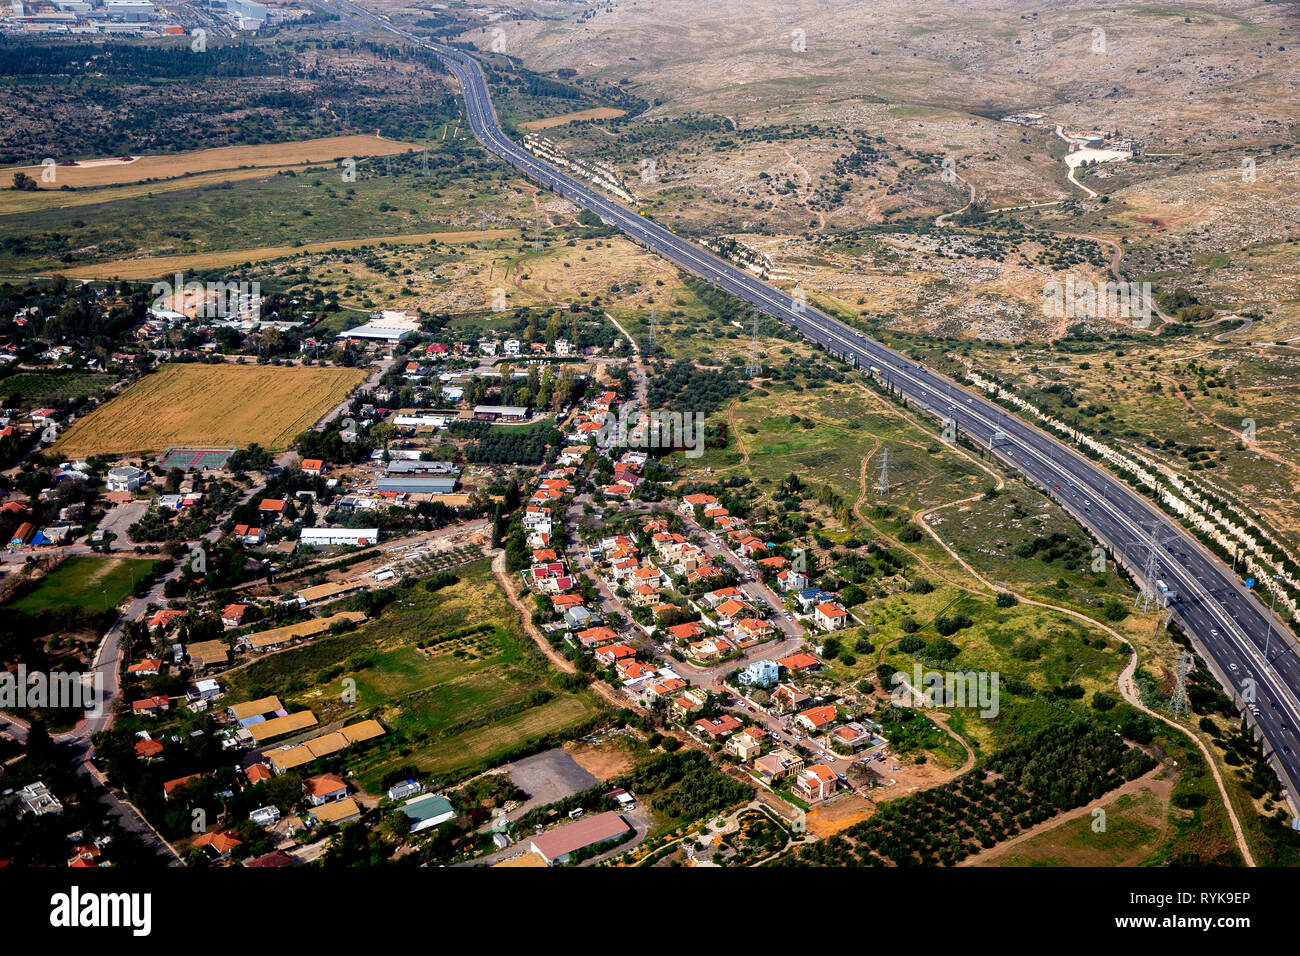 Vista aérea de la zona costera, cerca de Tel Aviv, Israel. Foto de stock